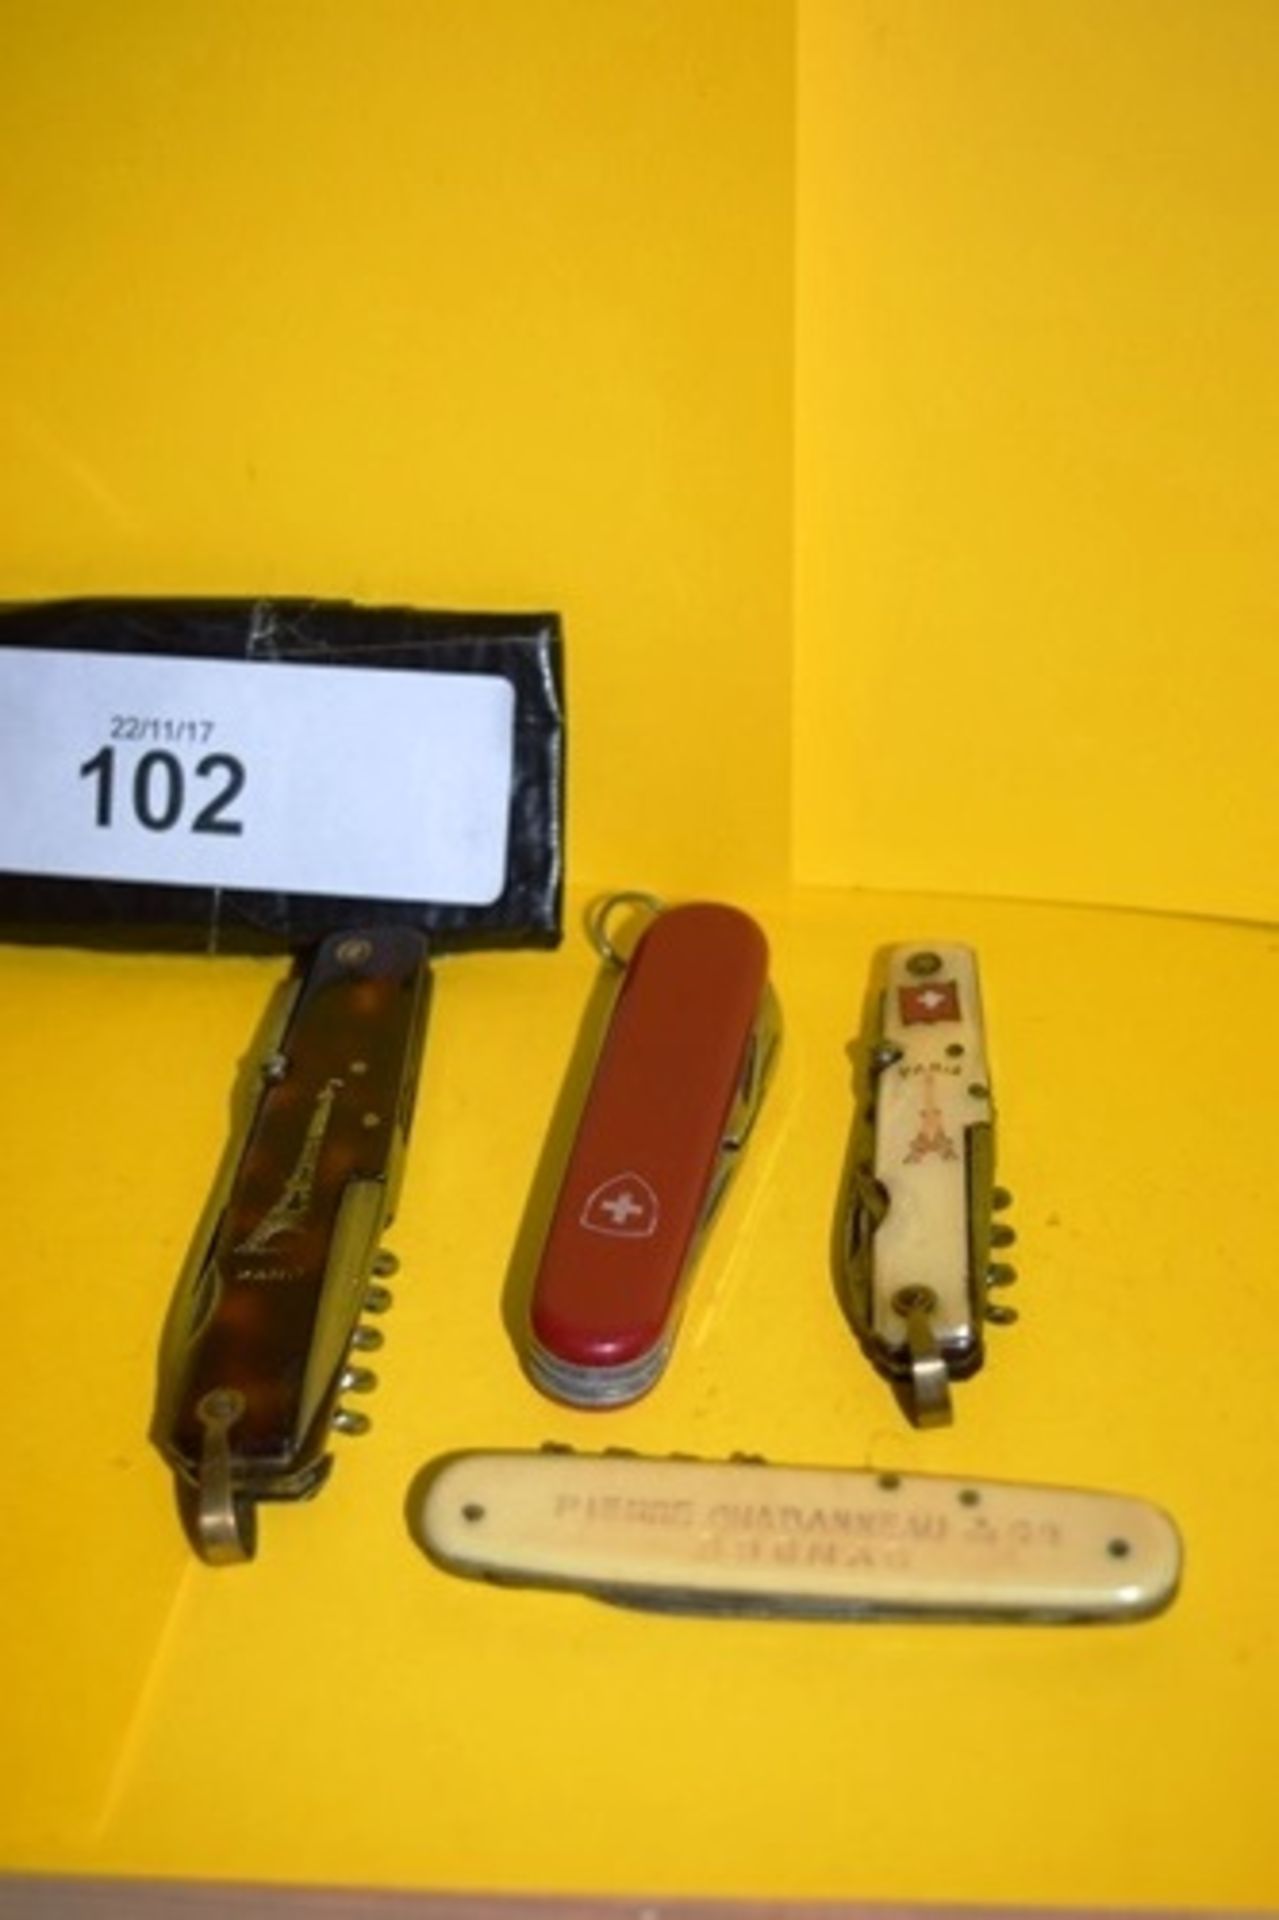 1 x Victorniox Swiss 6 tool penknife, 1 x FD A L'etoile D'Acier multi tool penknife, 1 x Pradel